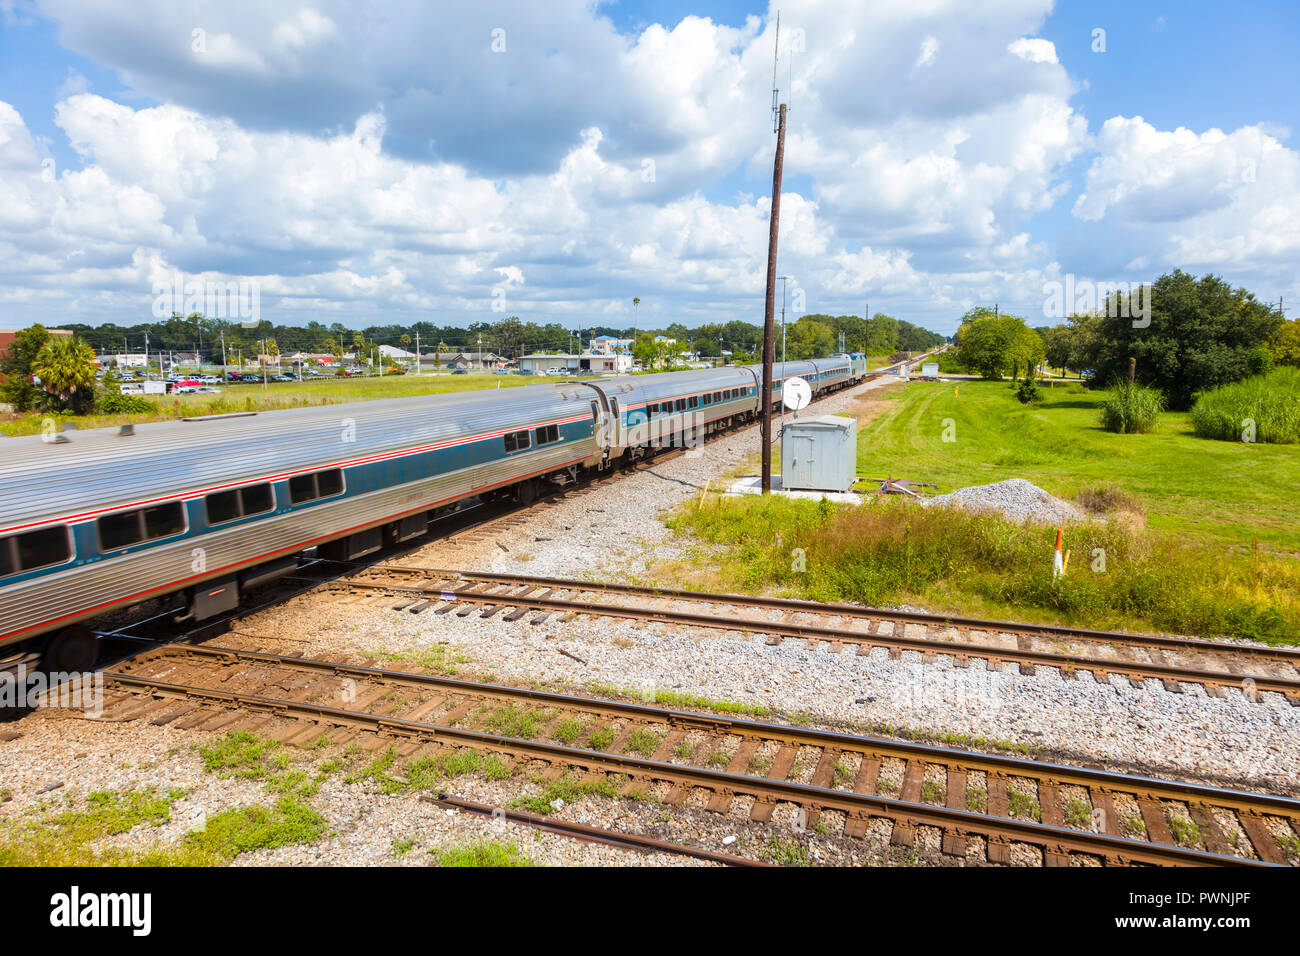 Personenzug an den Anschlüssen an der Schiene Schnittpunkt an der Union Station Depot und Zug diese Plattform in Plant City Florida in den Vereinigten Staaten Stockfoto